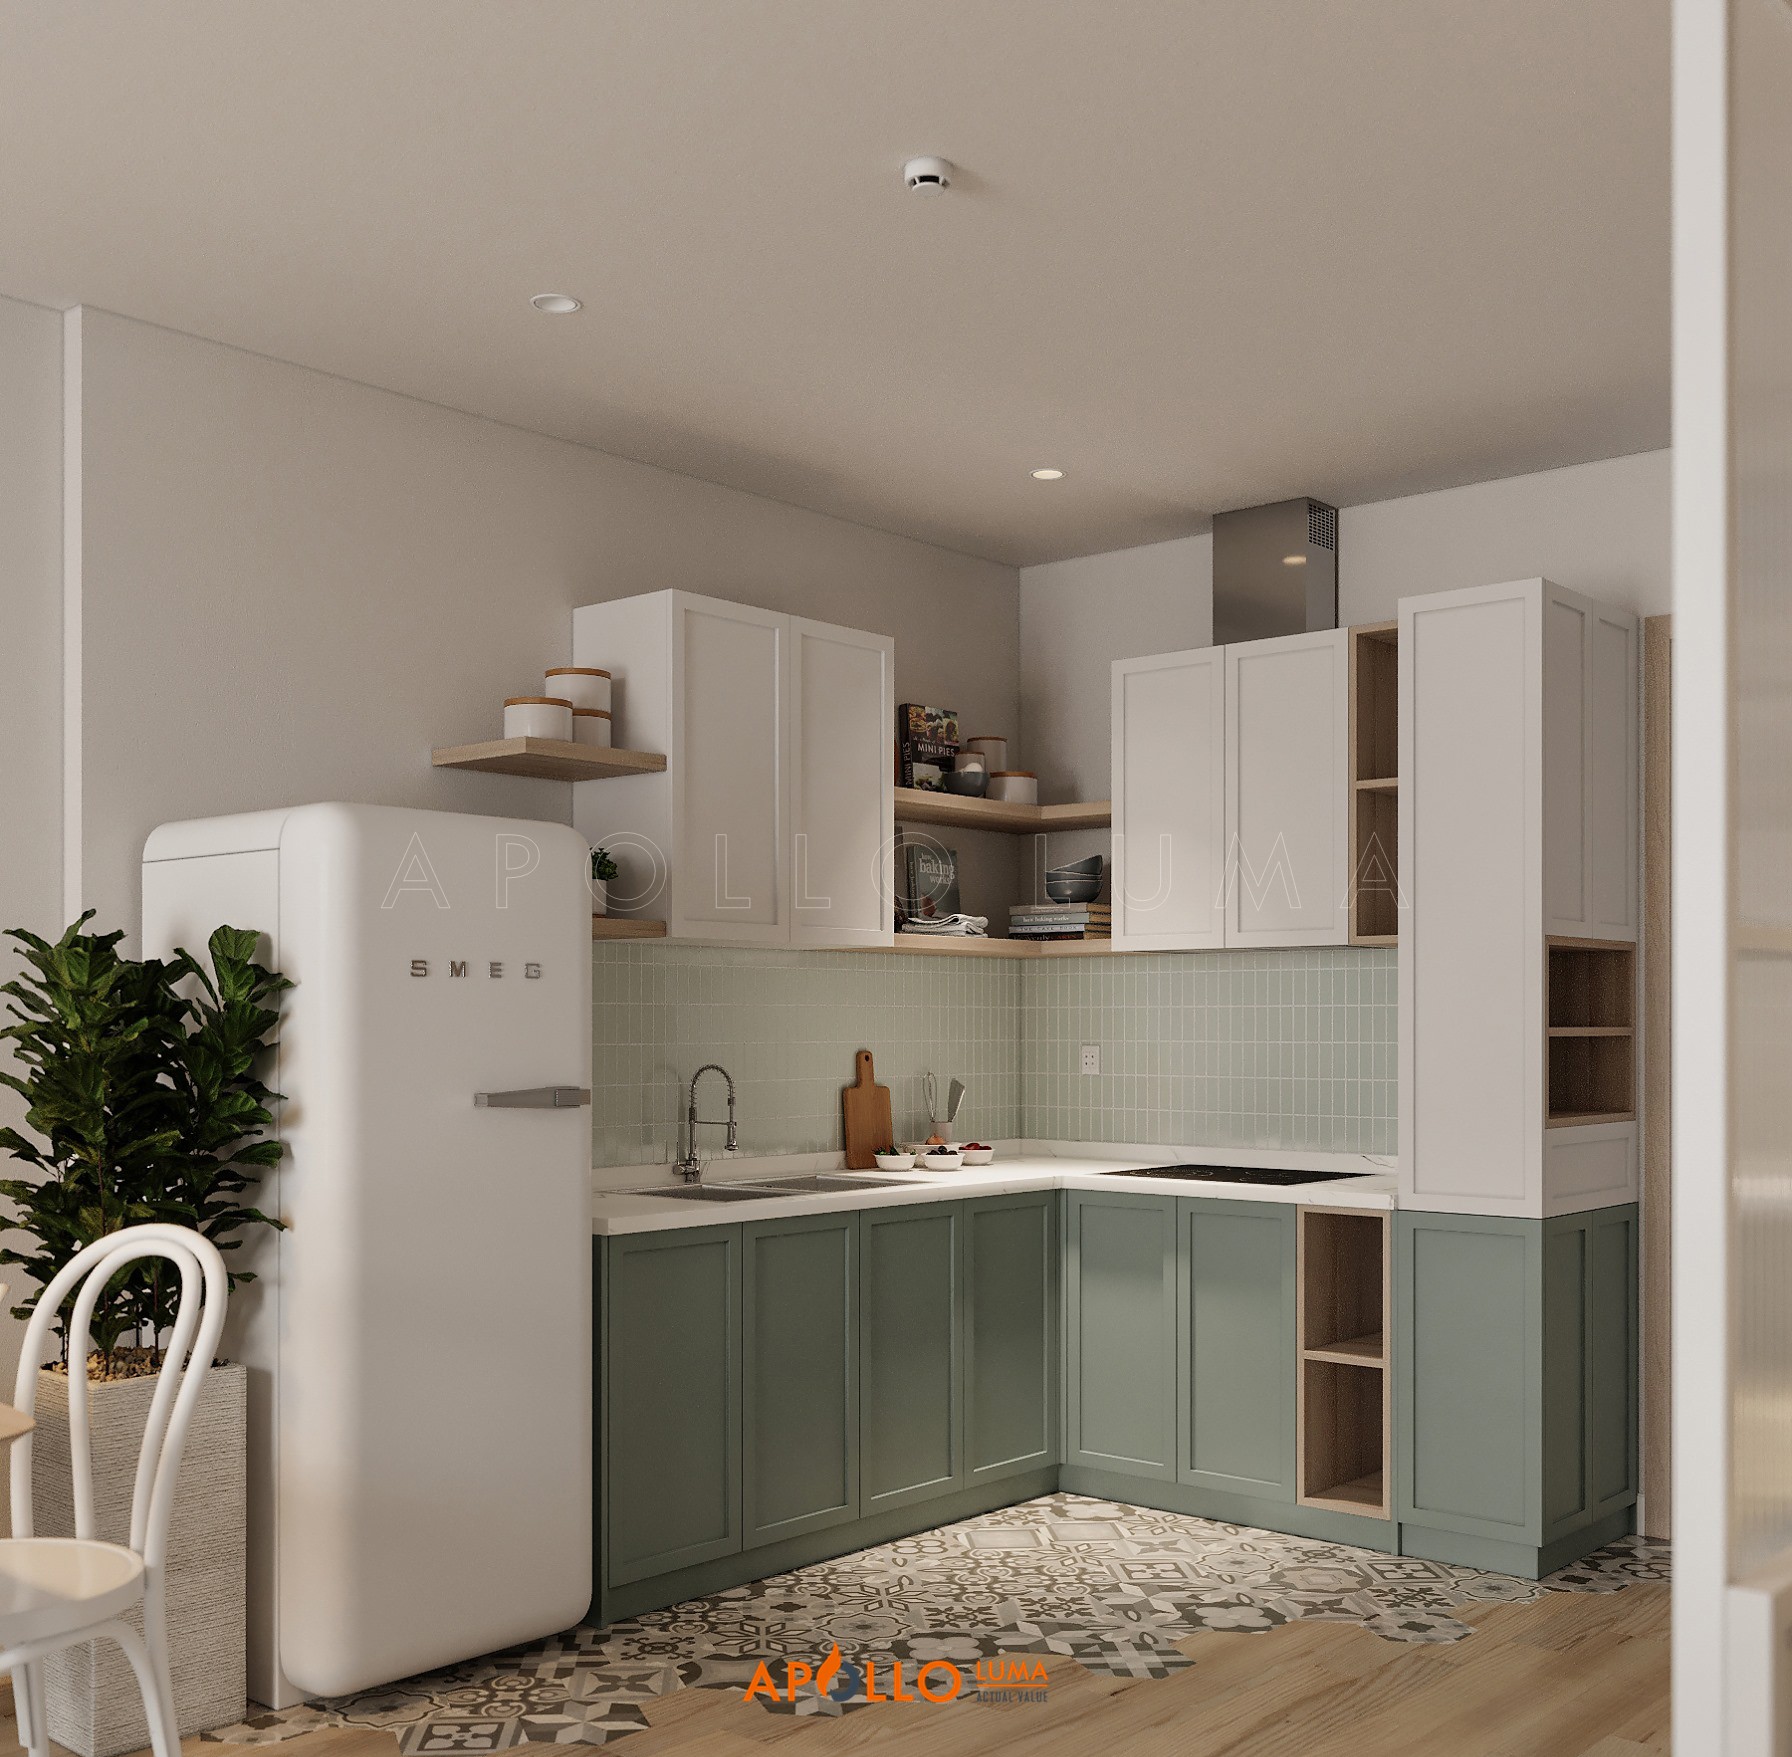 Thiết kế phòng bếp căn hộ 1PN+1 Vinhomes Smart City theo nhiều phong cách